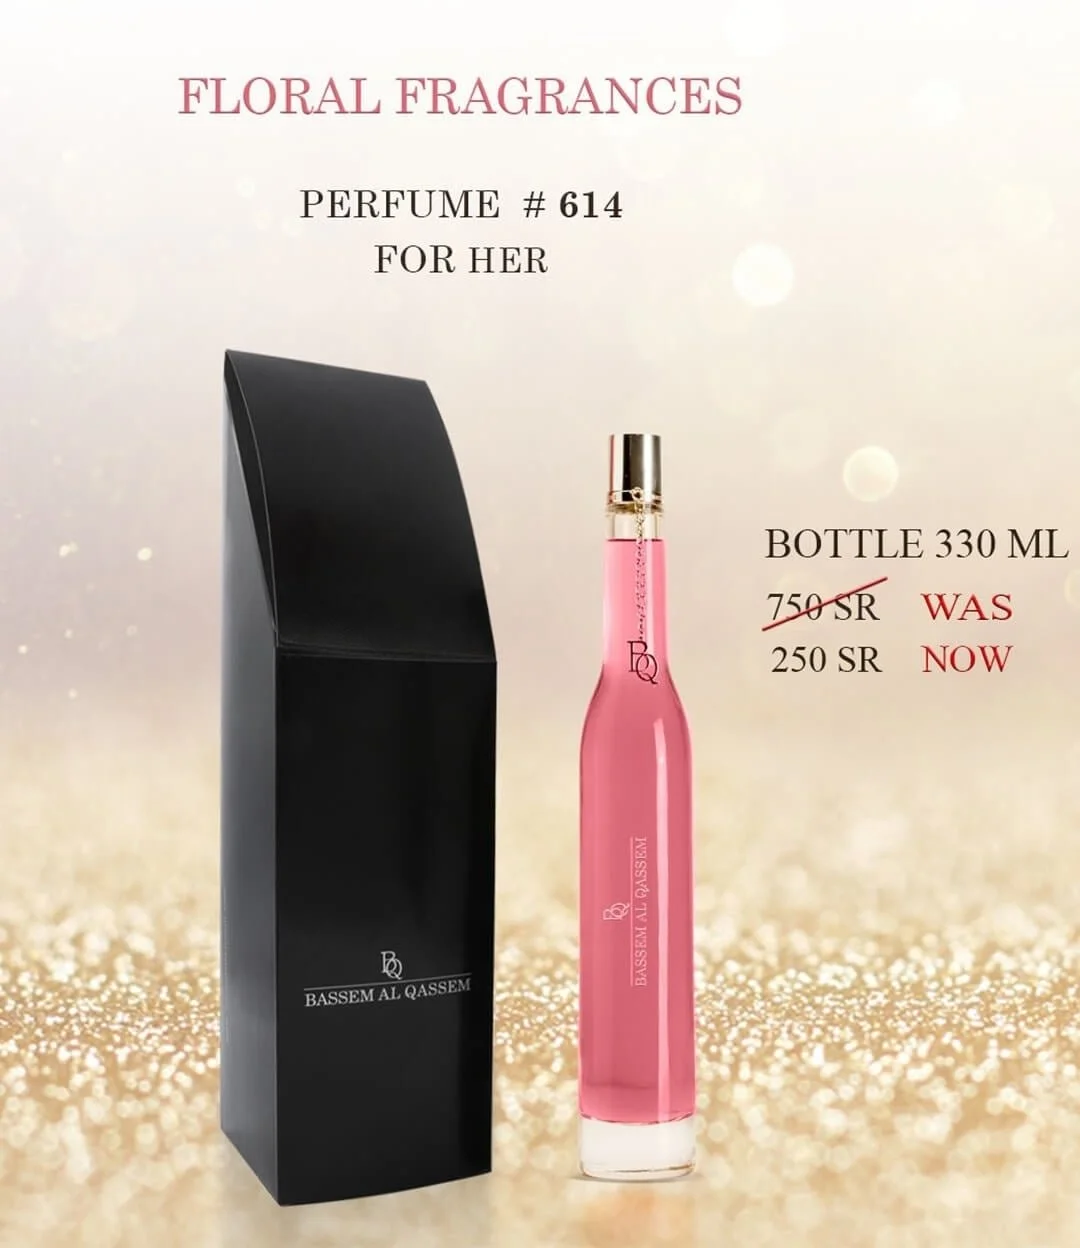 Perfume #614 Floral Fragrance for Her by Bassem Al Qassem 